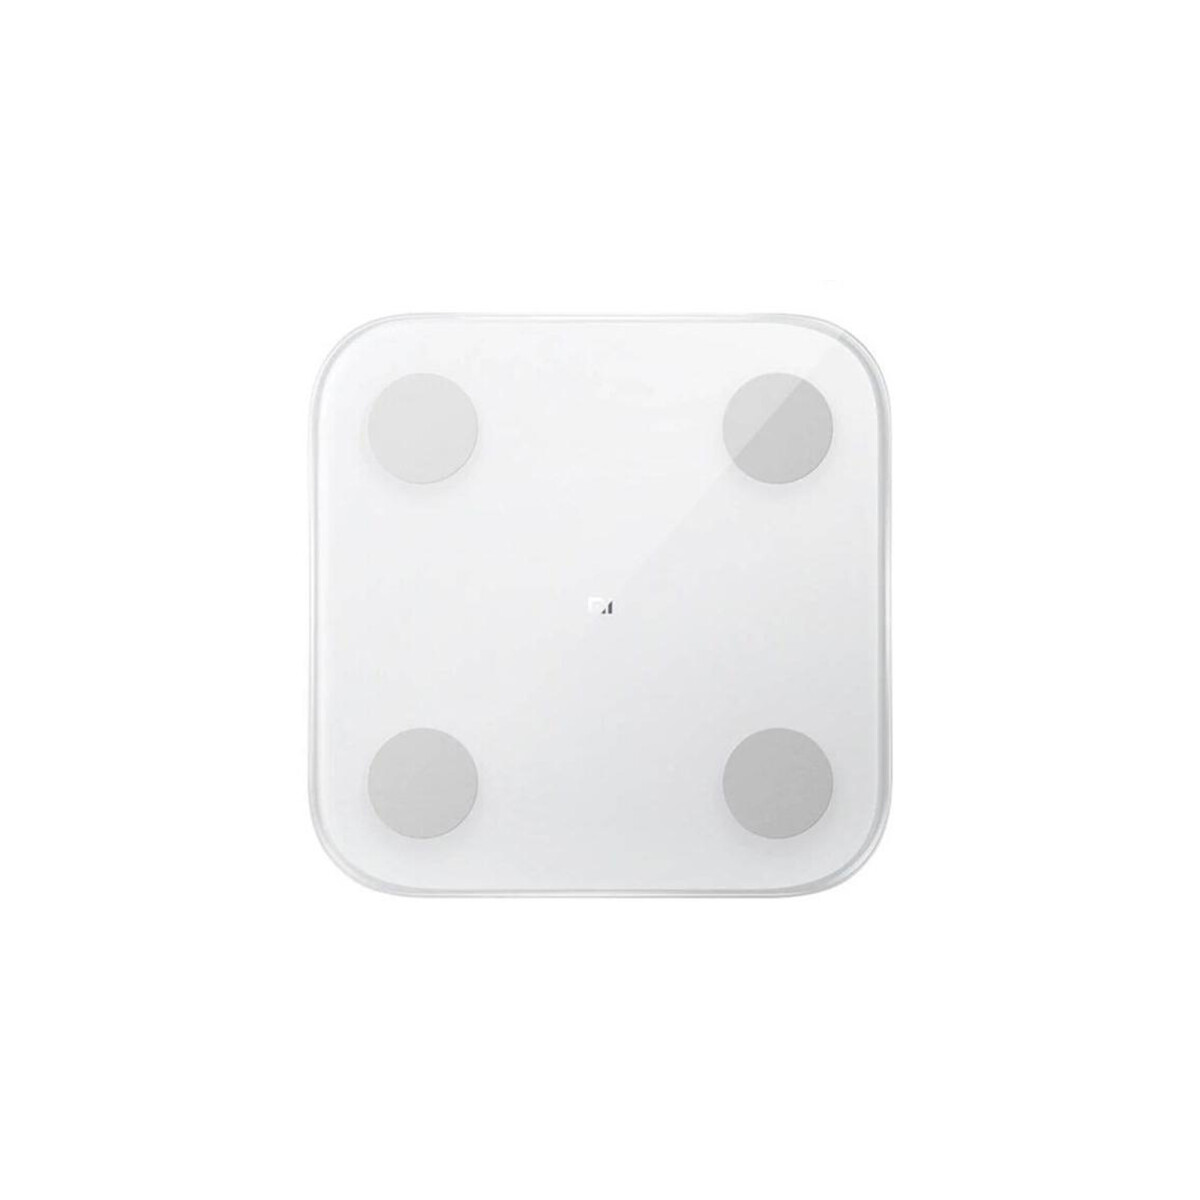 Balanza Xiaomi Composición Corporal 2 - Blanca 